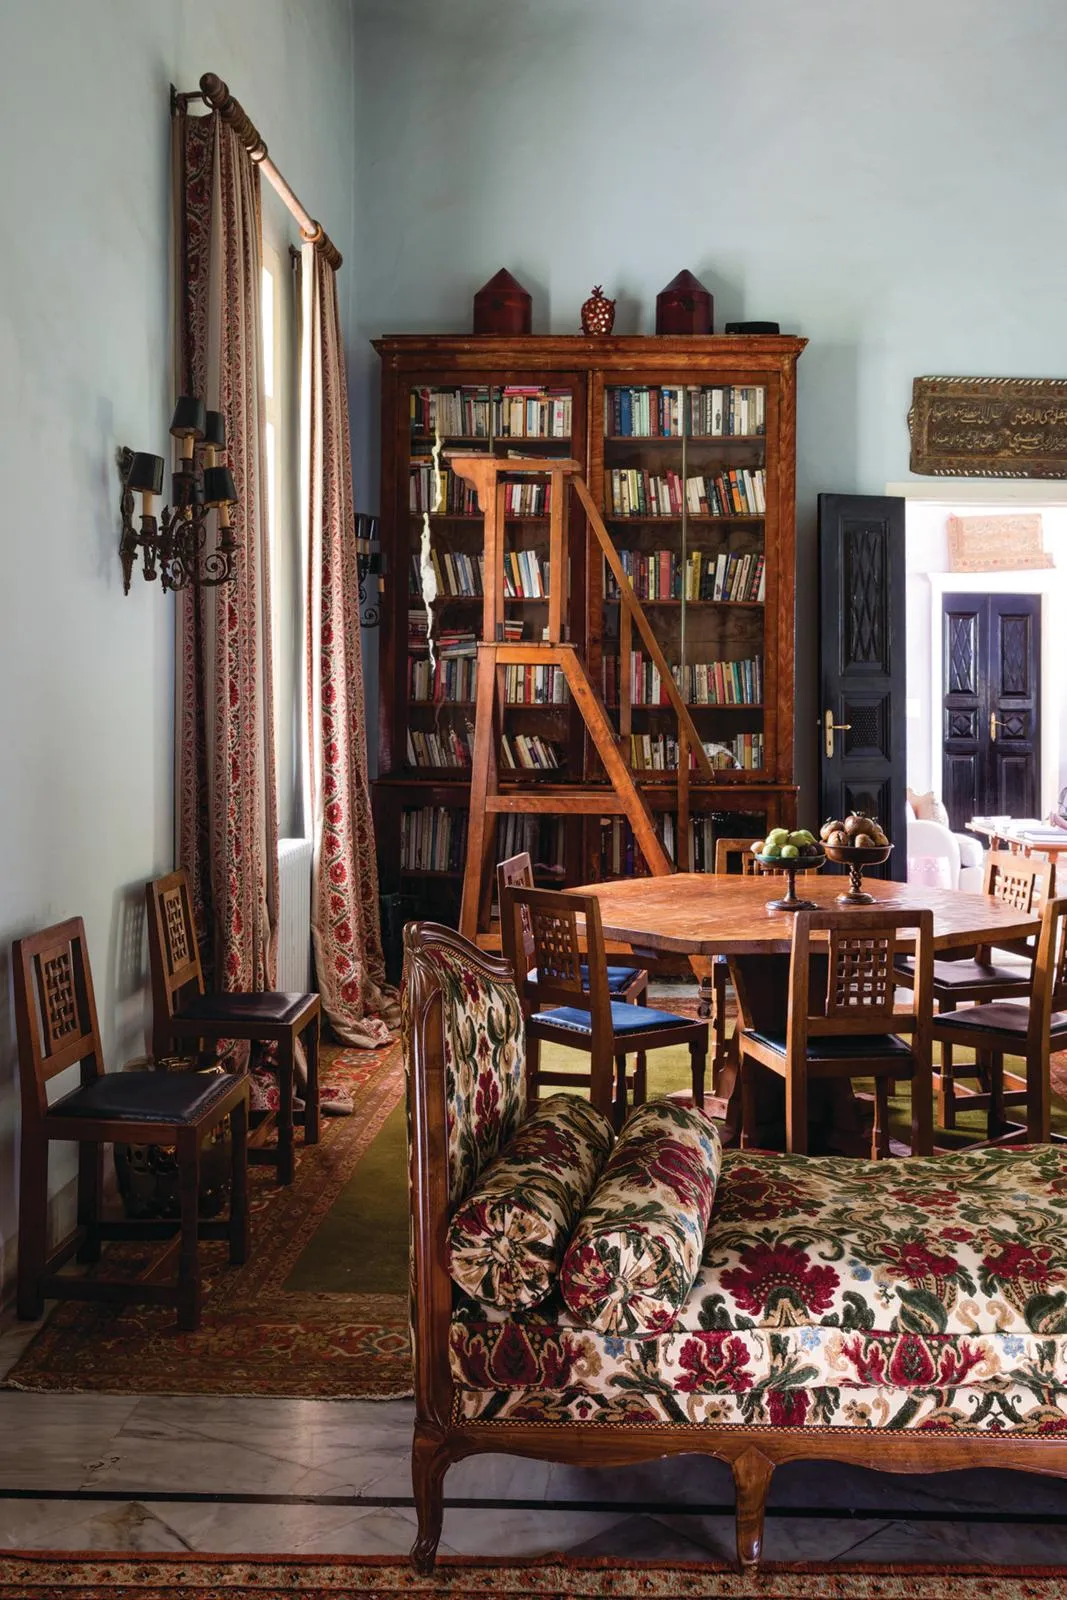 19th-centuy villa in Beirut, dining room.